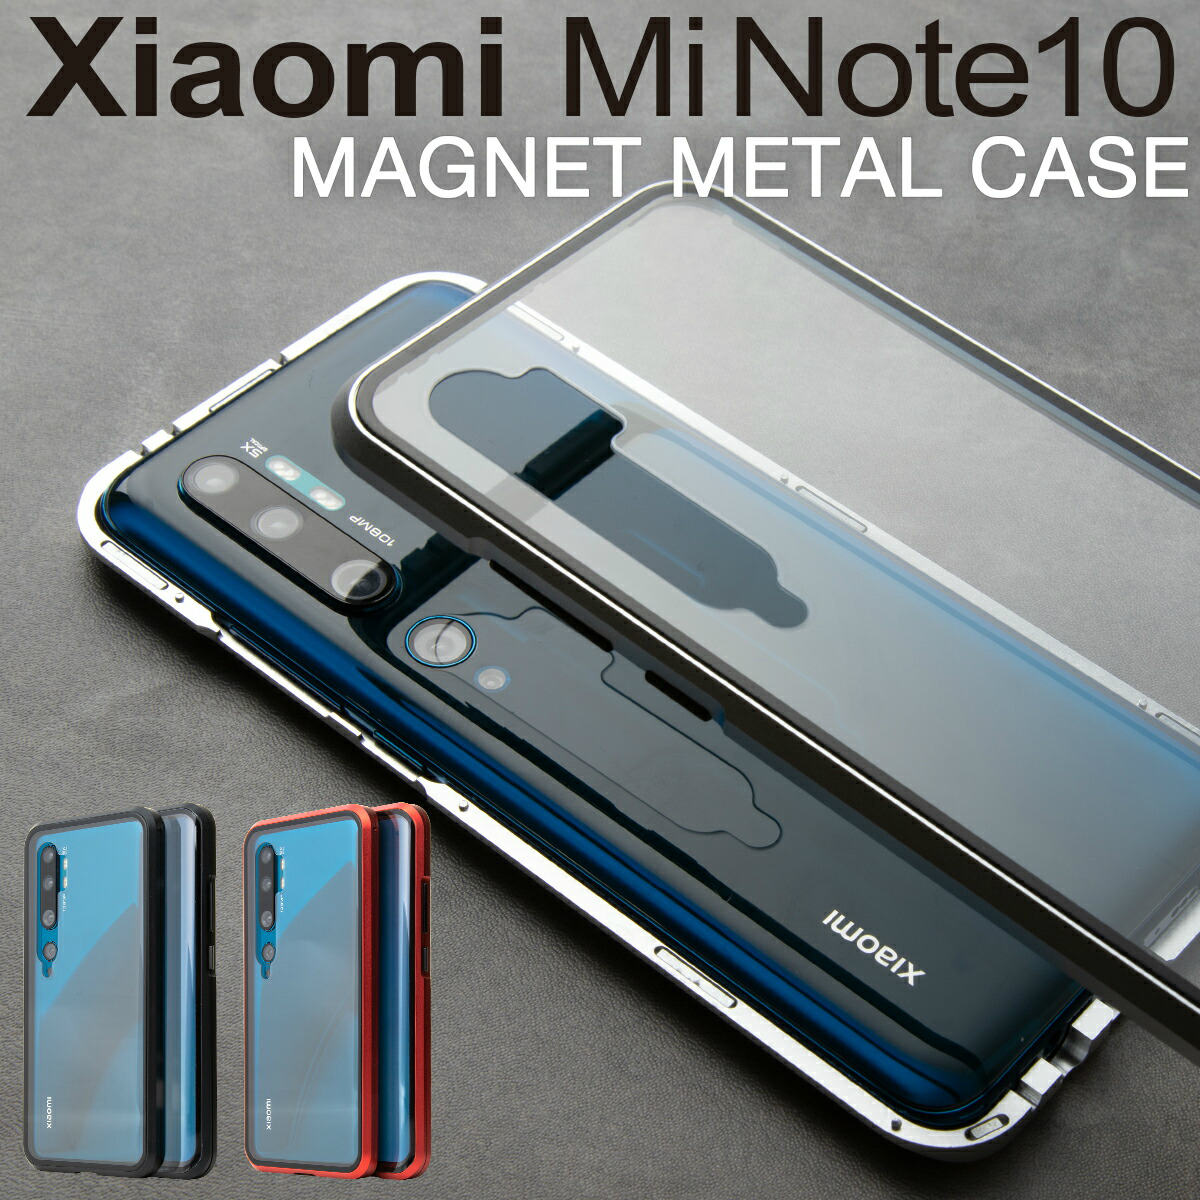 楽天市場 Xiaomi Mi Note 10 スマホケース 韓国 スマホ カバー シャオミ かっこいい おしゃれ 人気 かわいい おすすめ マグネットケース 名入れスマホケースエックスモール